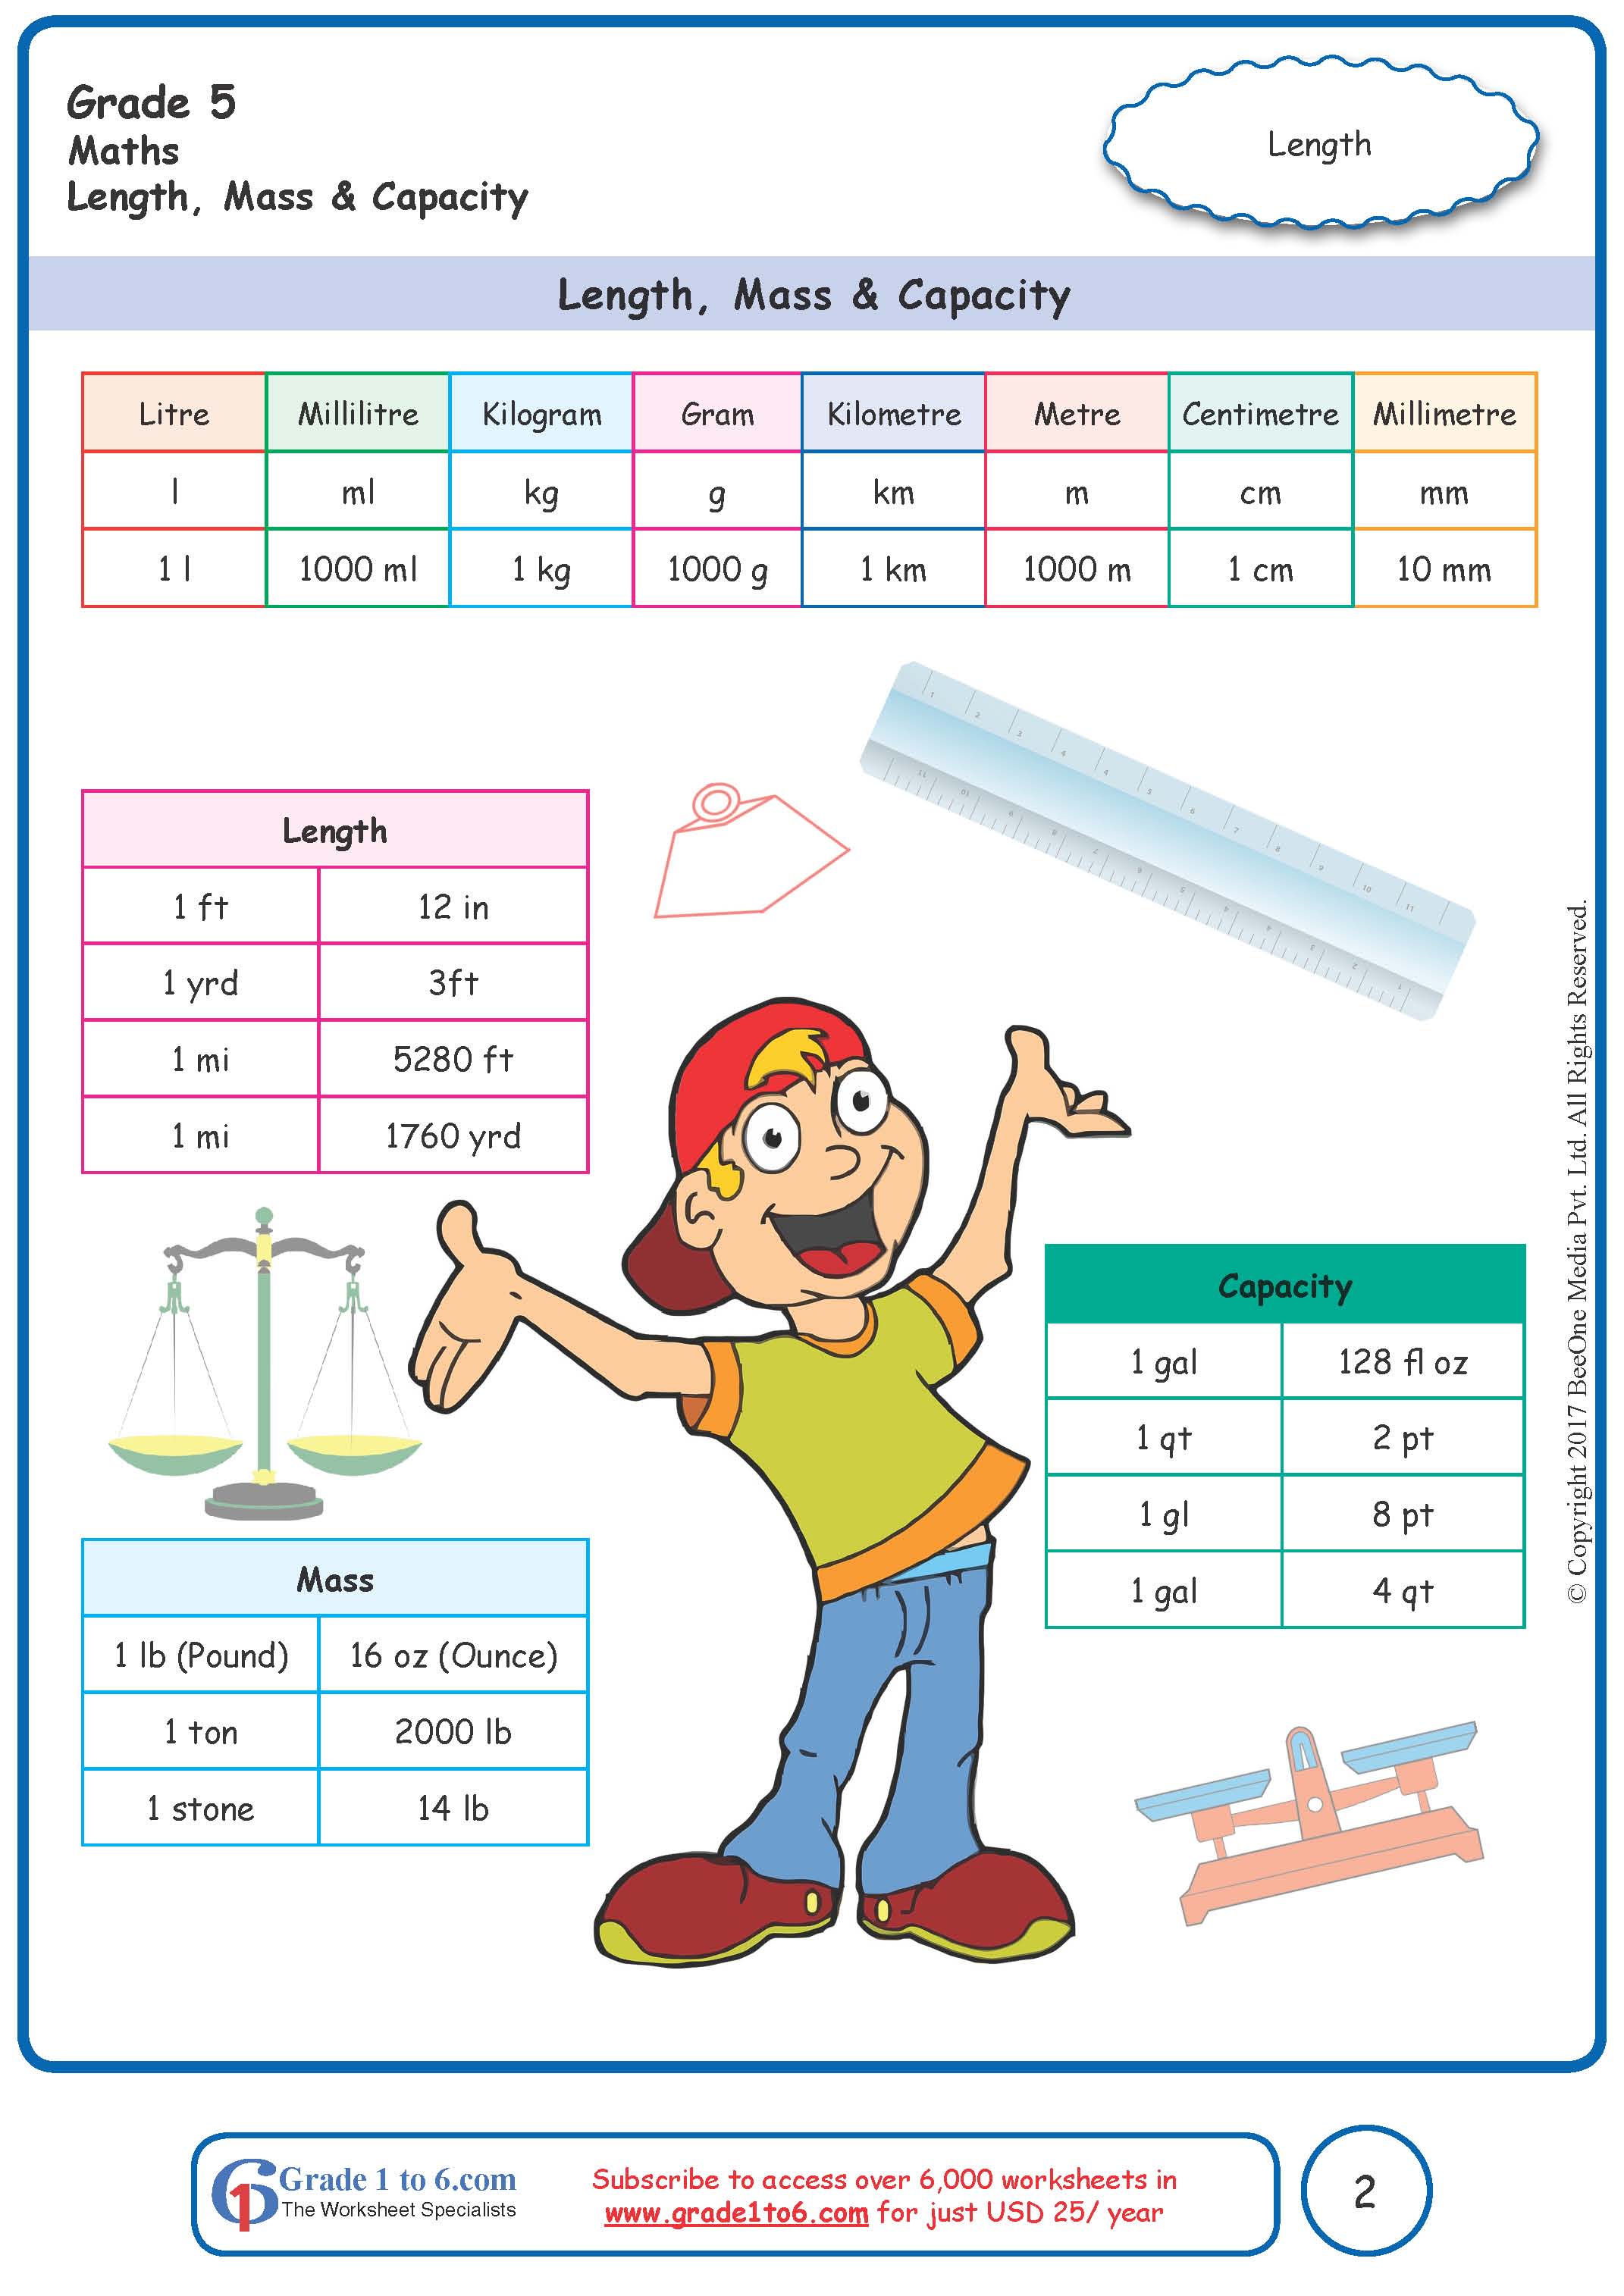 Measurement Conversion Chart Kid Friendly